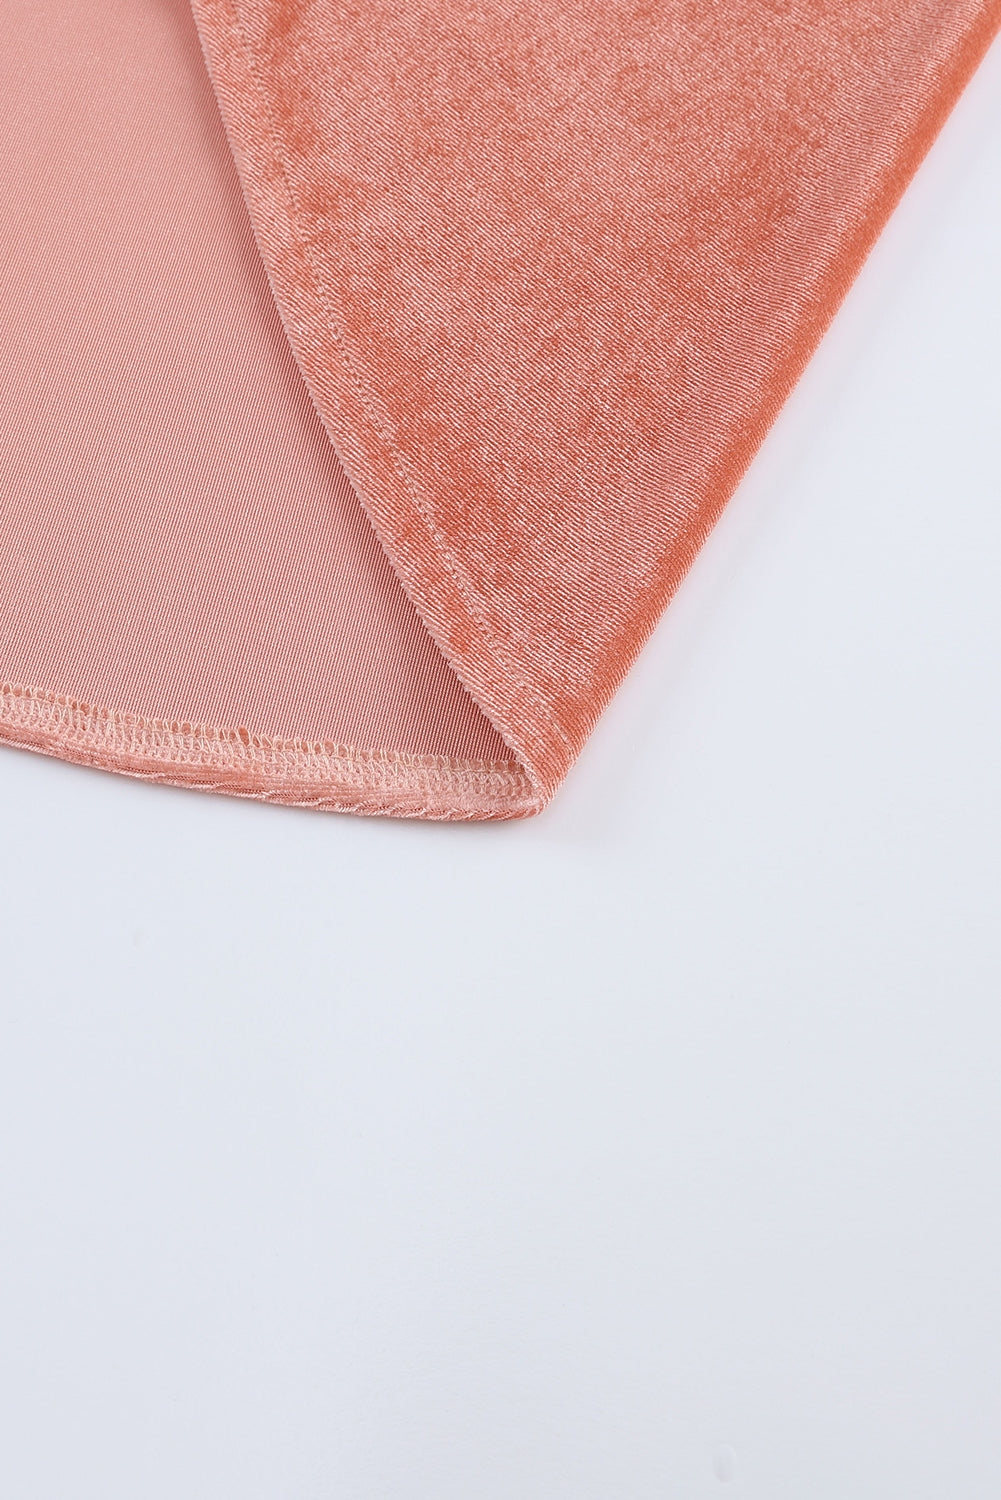 Ružičasti retro kardigan širokih rukava od baršuna